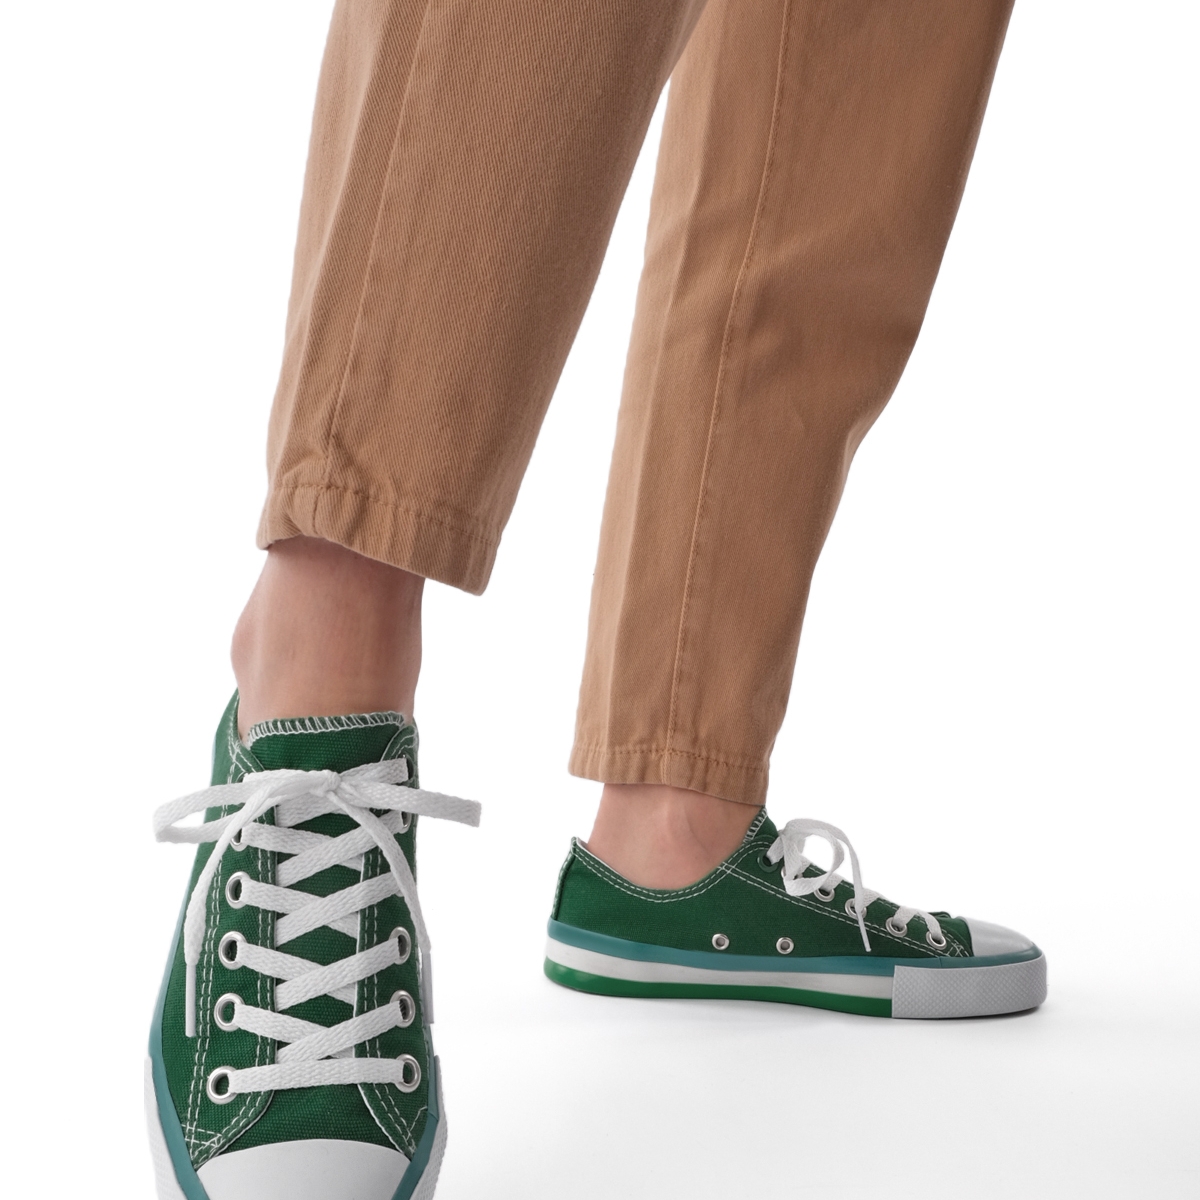 Flo Kadın Sneaker Keten Kumaş Bağcıklı Spor Ayakkabı Hesna Yeşil. 3